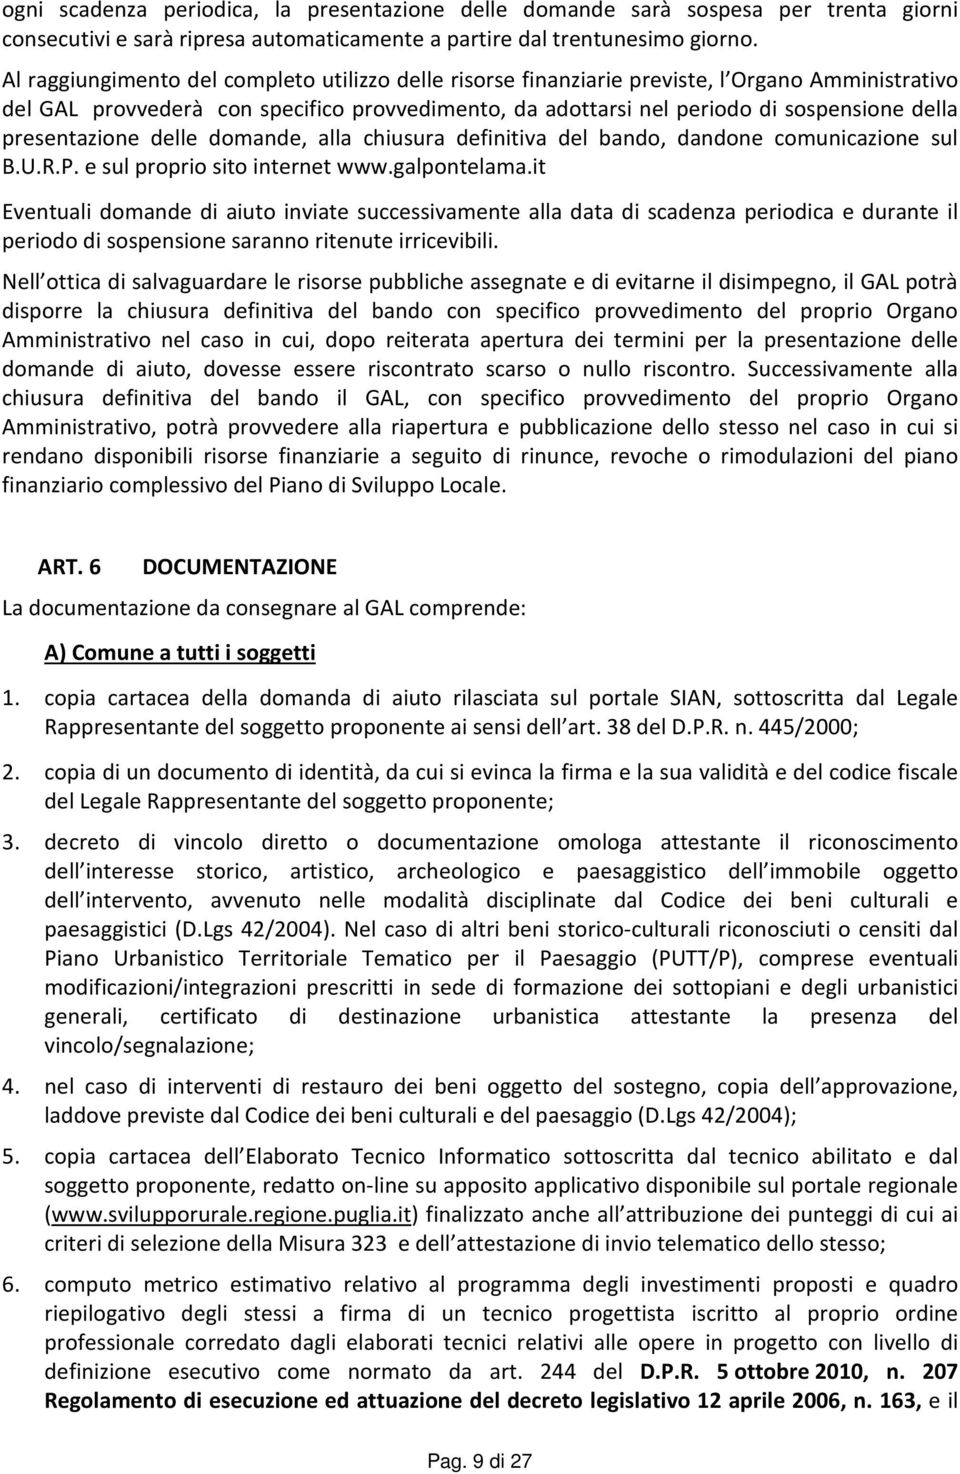 presentazione delle domande, alla chiusura definitiva del bando, dandone comunicazione sul B.U.R.P. e sul proprio sito internet www.galpontelama.